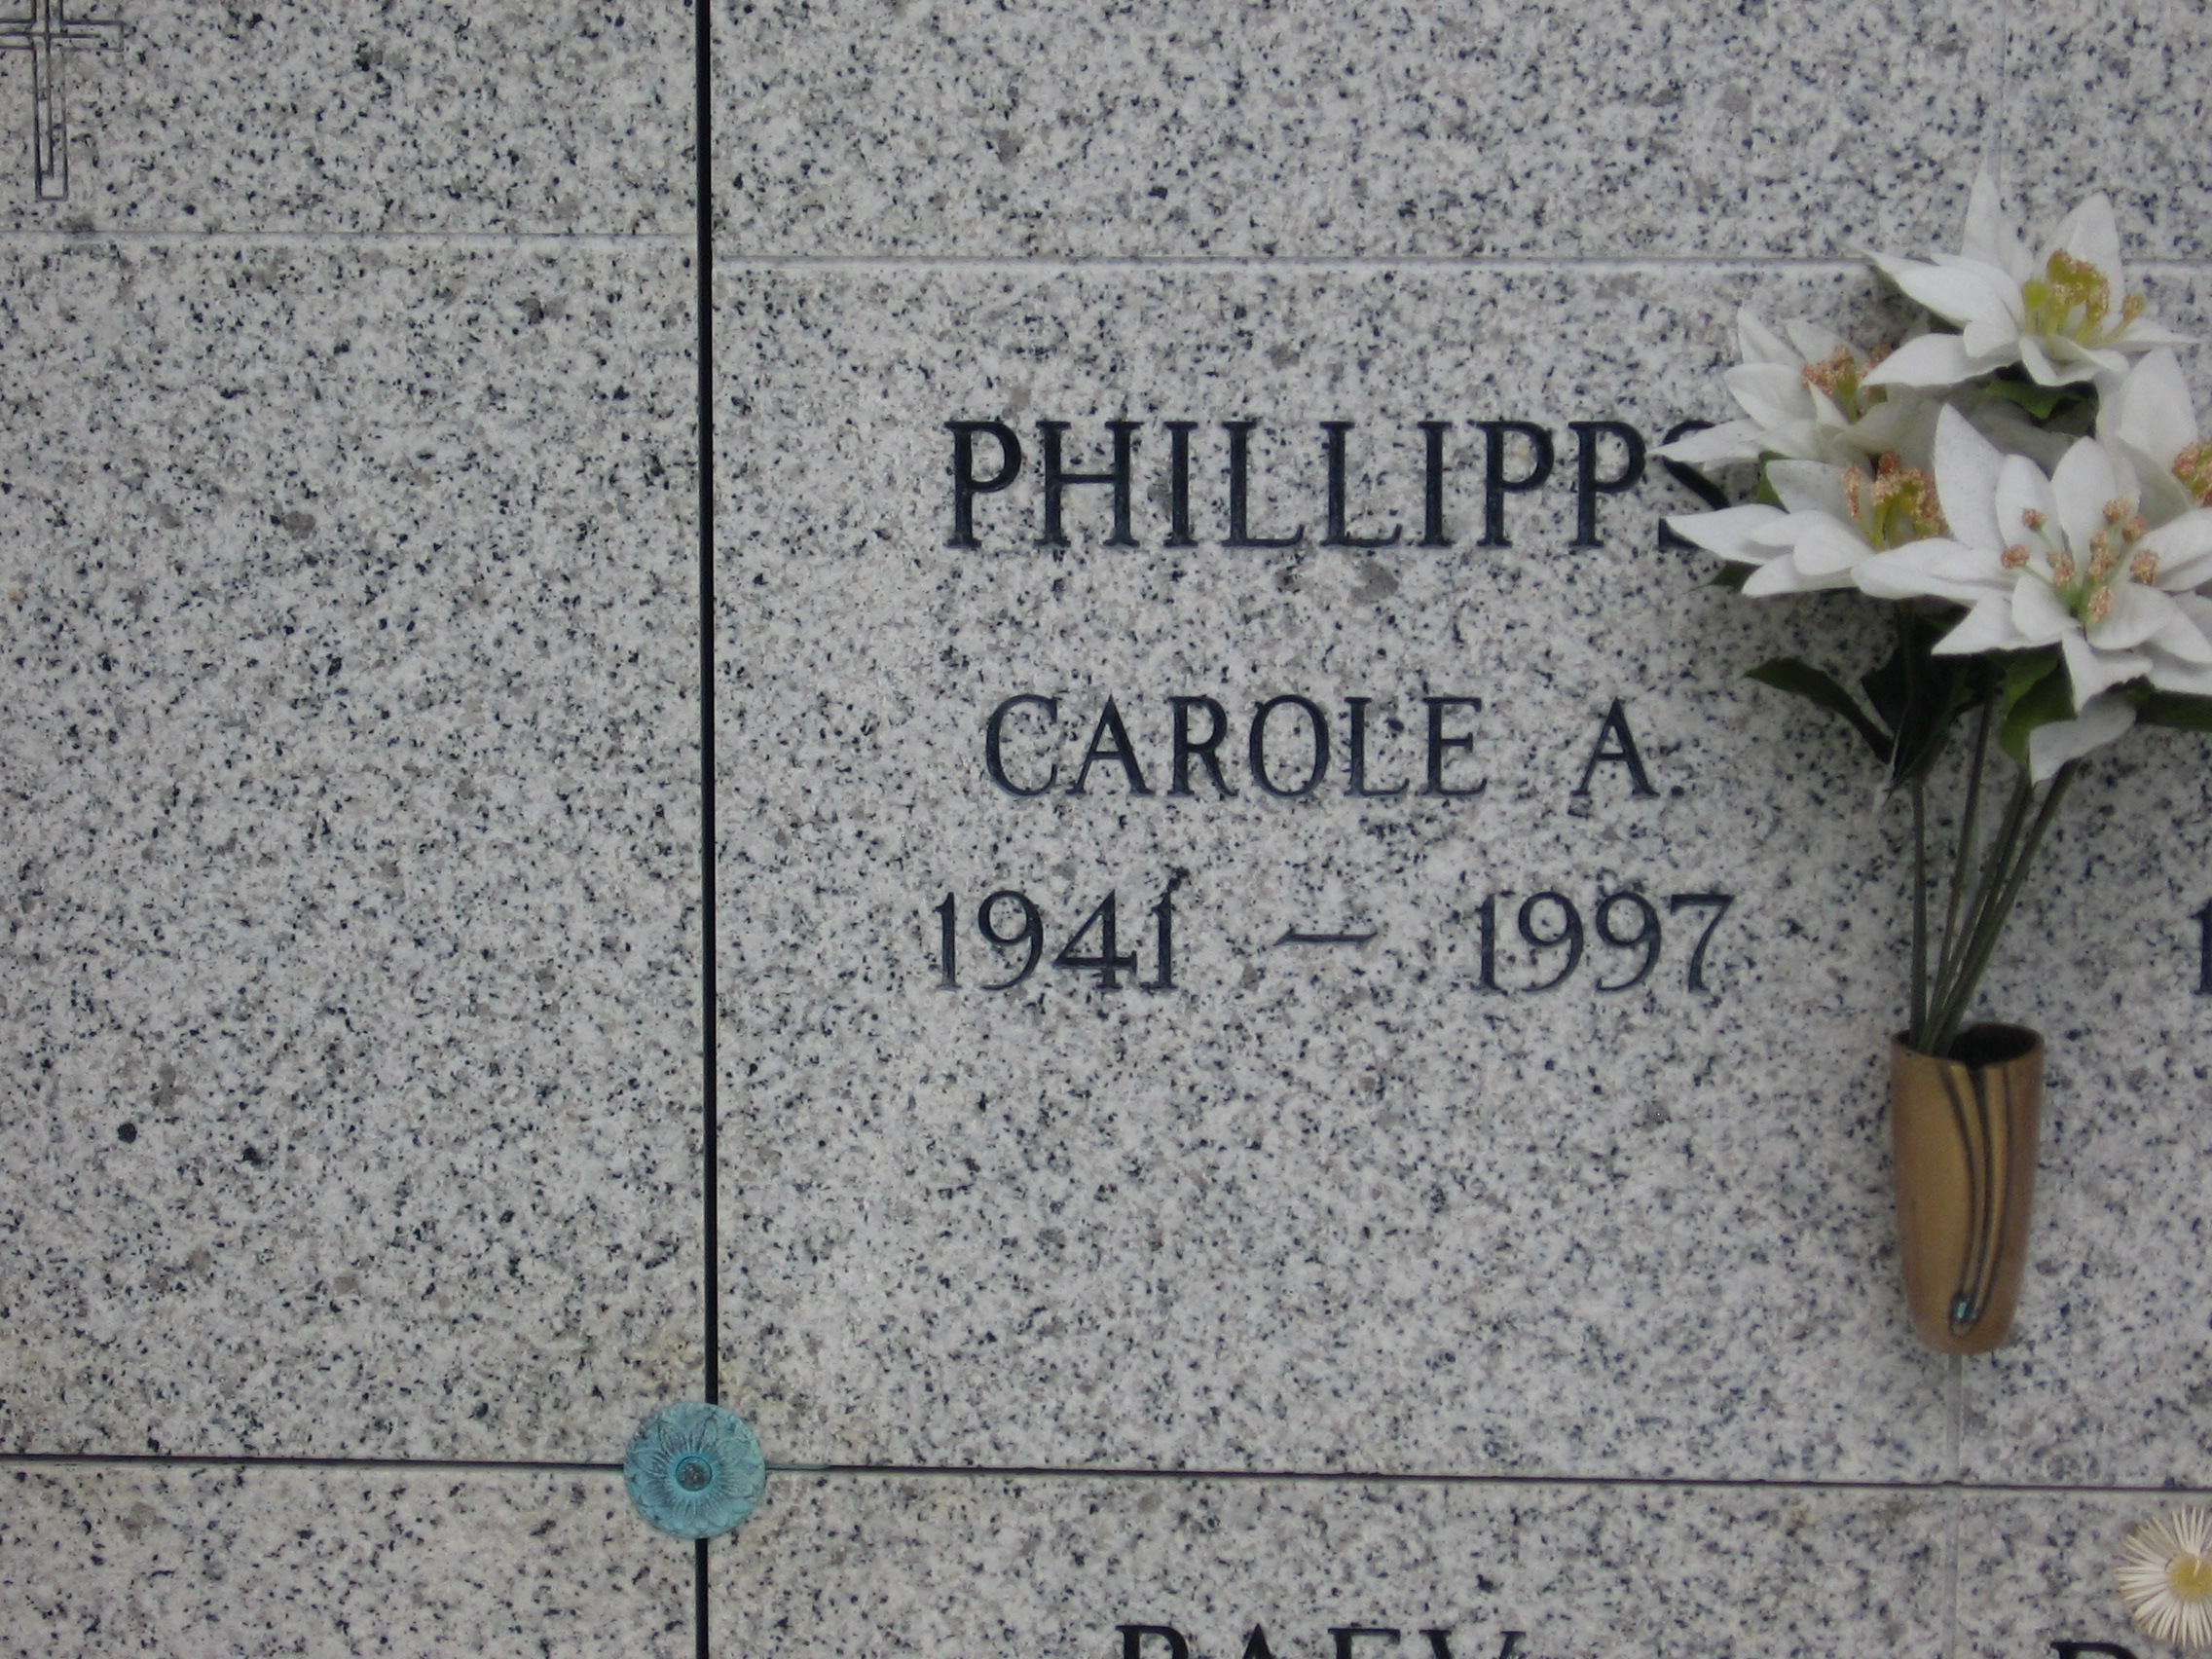 Carole A Phillipps